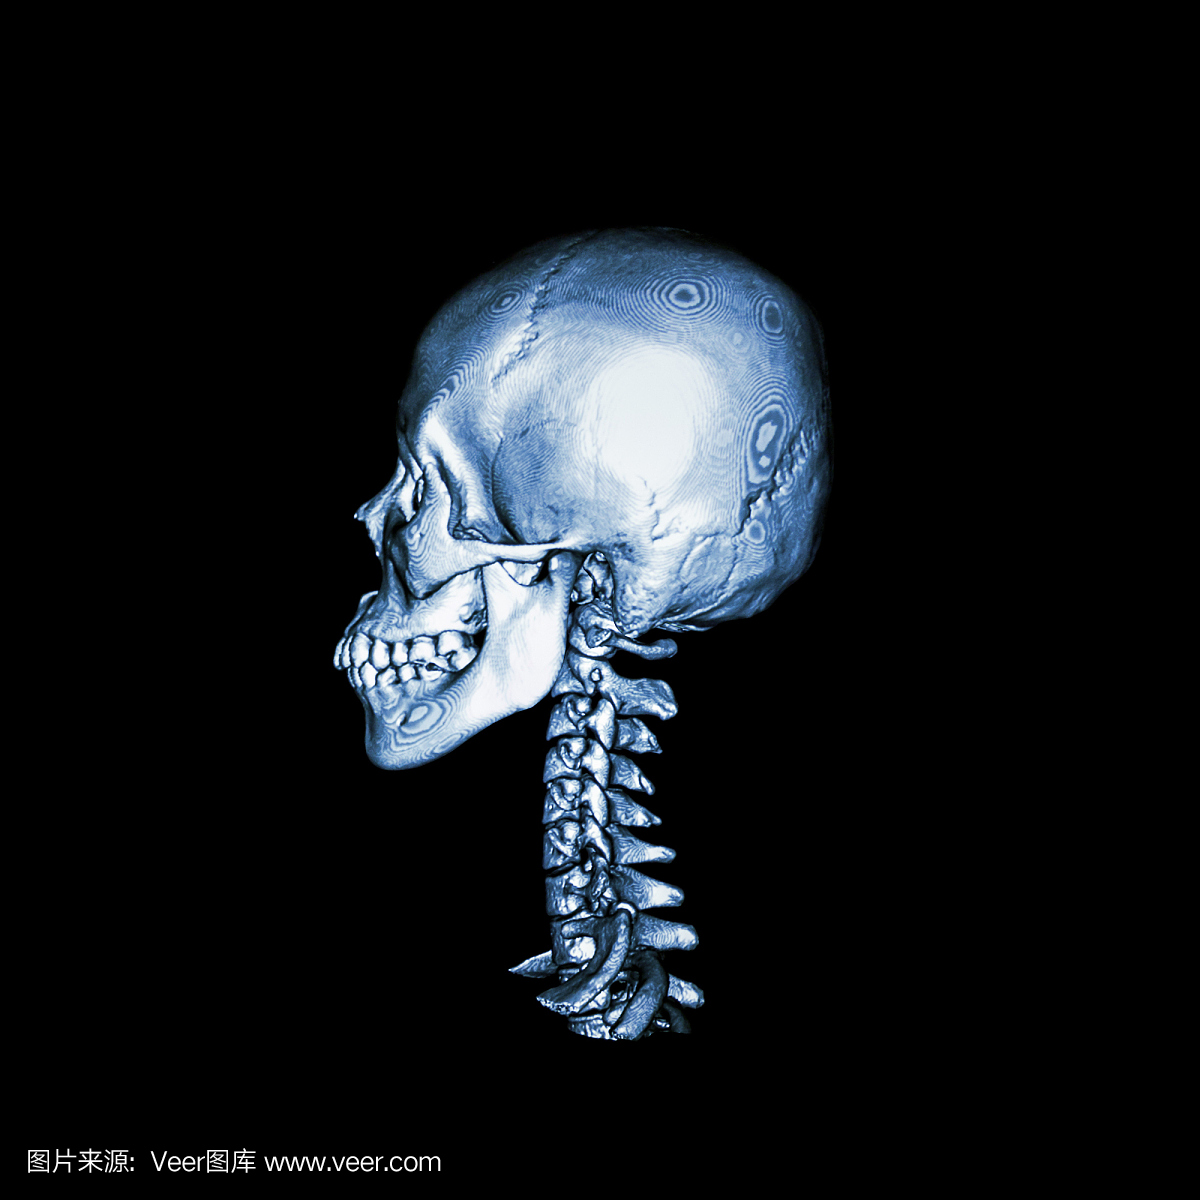 CT扫描与正常人类头骨和颈椎的3D图像。侧视